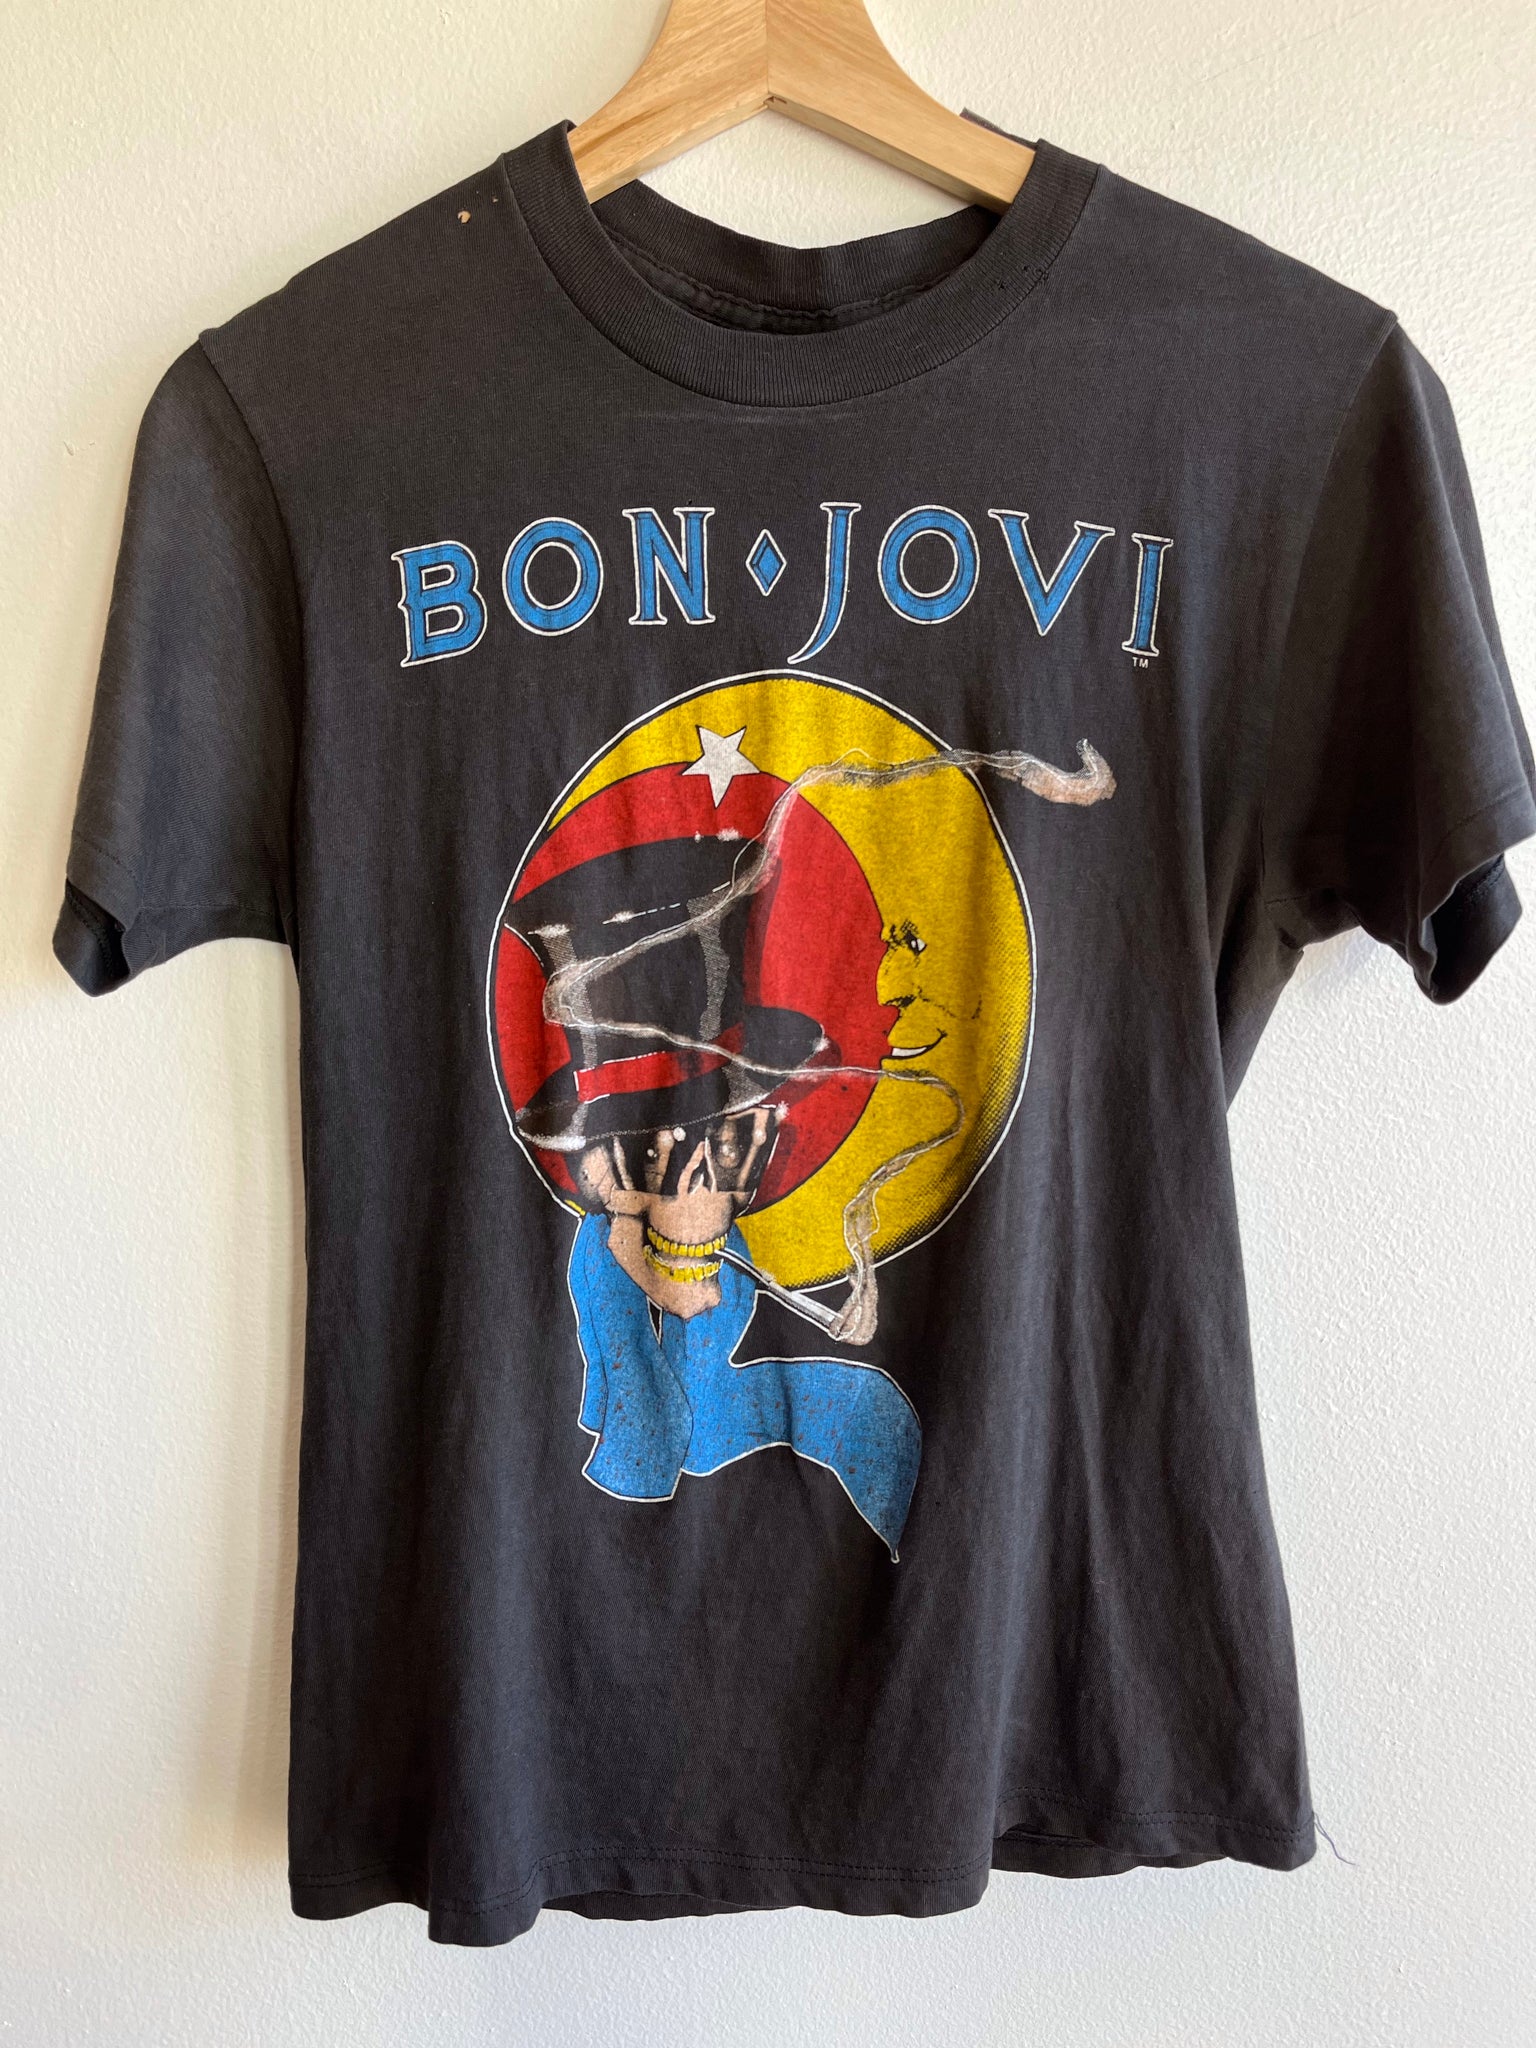 Authentic Vintage Bon Jovi T-Shirt